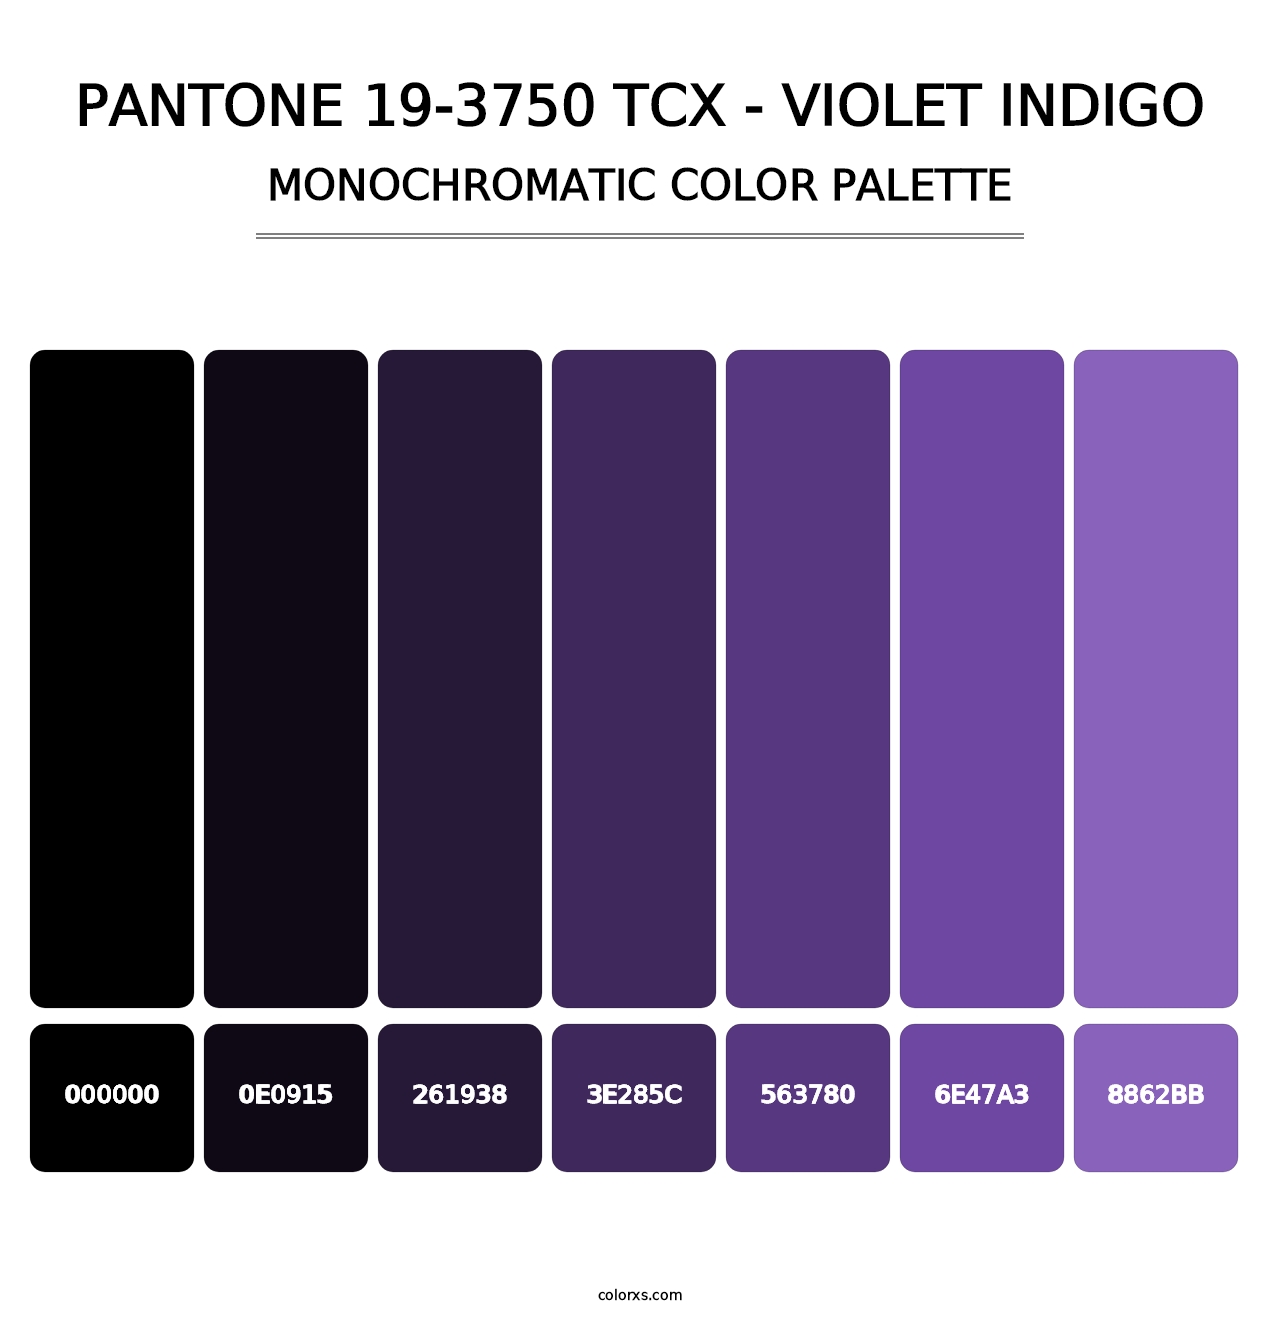 PANTONE 19-3750 TCX - Violet Indigo - Monochromatic Color Palette